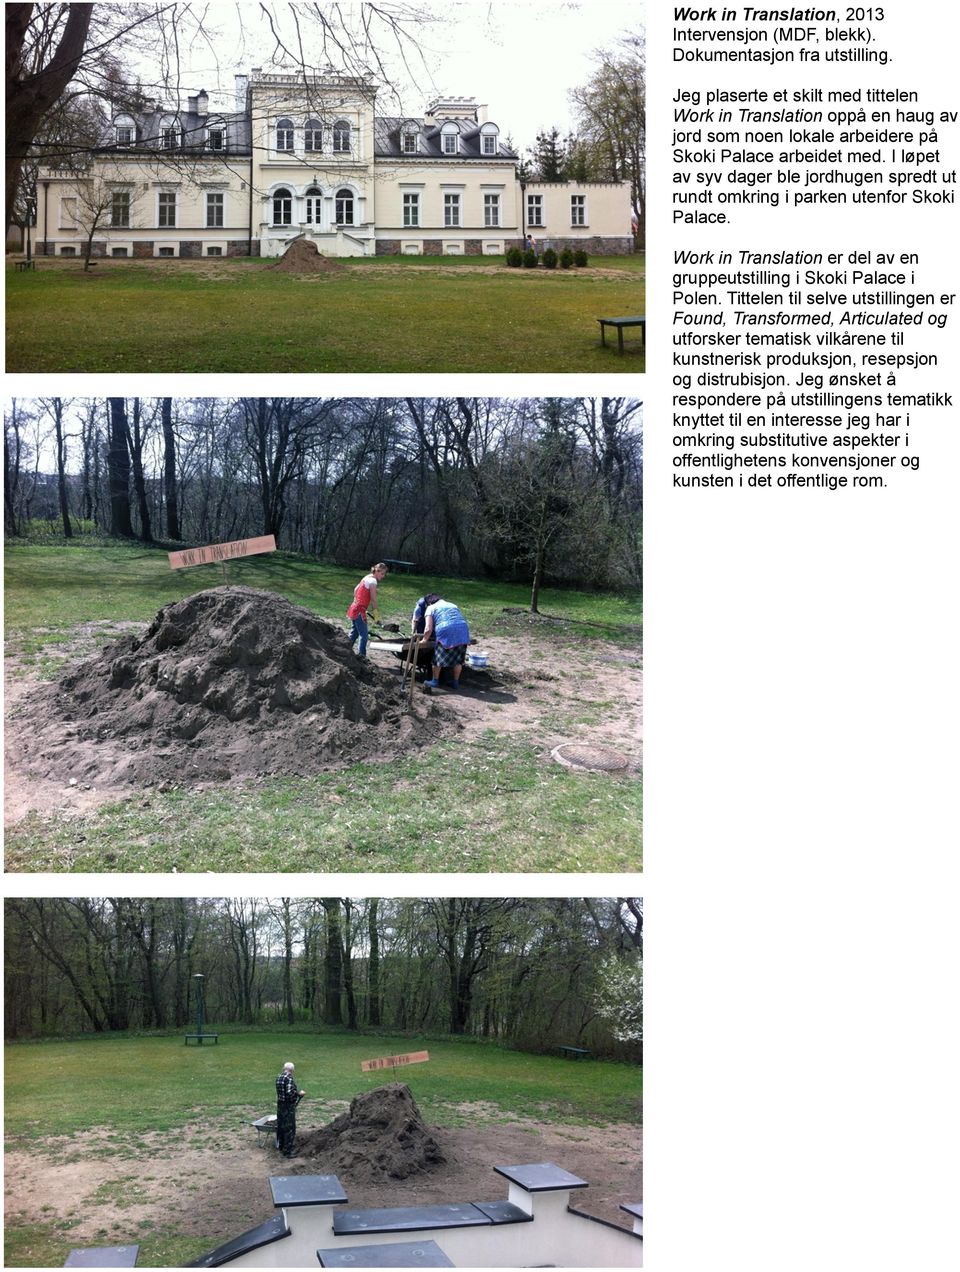 arbeidet med. I løpet av syv dager ble jordhugen spredt ut rundt omkring i parken utenfor Skoki Palace. Work in Translation er del av en gruppeutstilling i Skoki Palace i Polen.